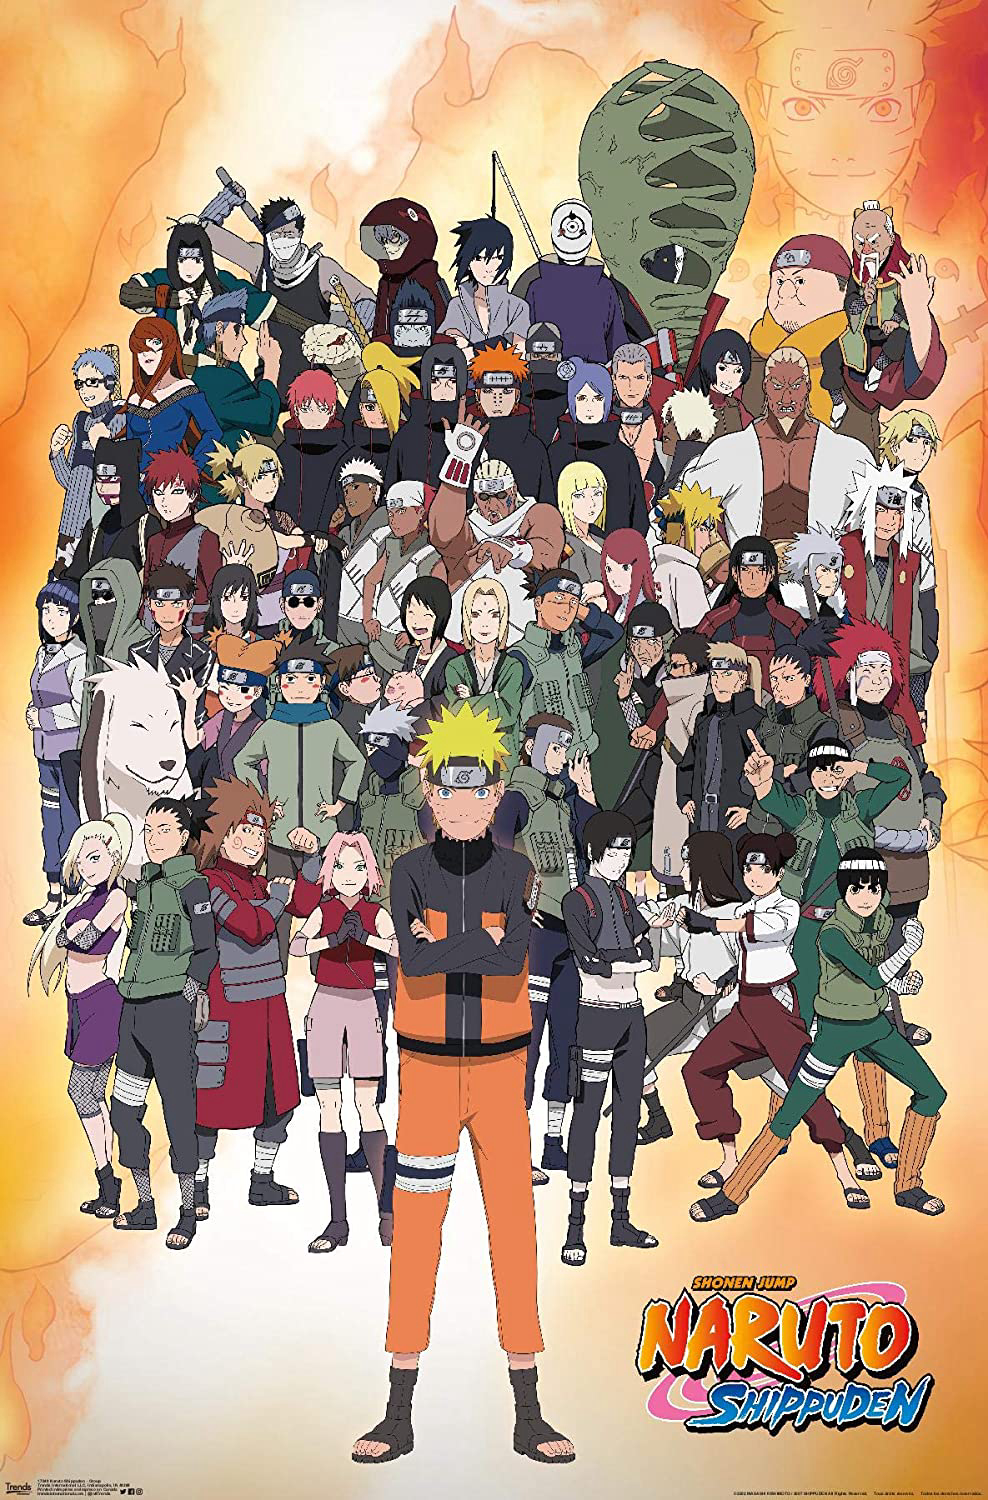 Poster Phim Naruto Shippuden (Naruto Shippuuden)